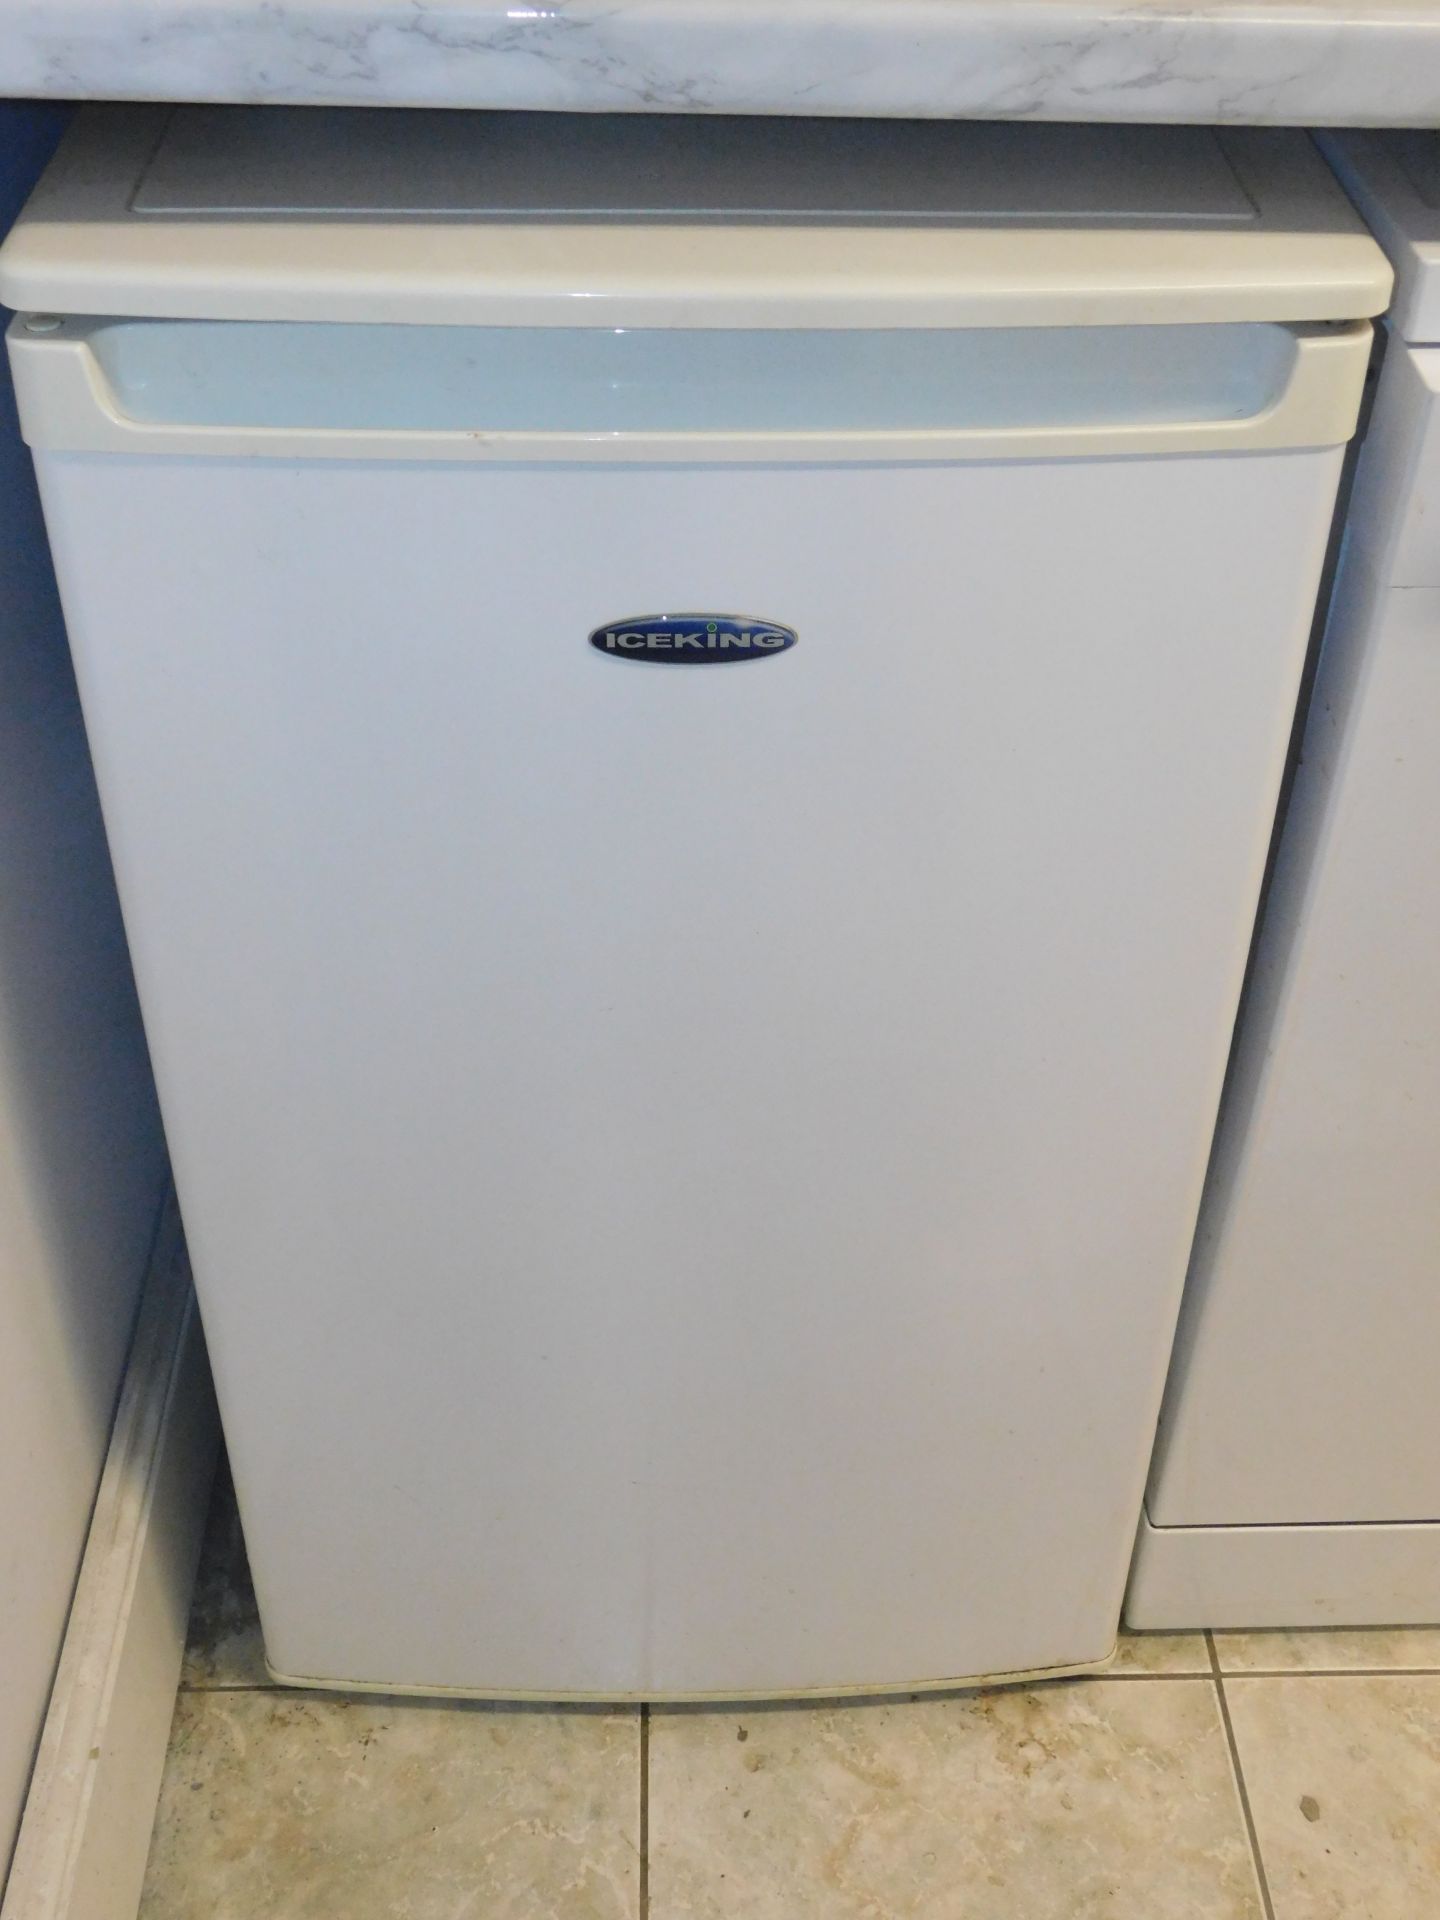 Kenwood Domestic Microwave, IceKing Fridge & Beko Dishwasher (Location Ashford, Kent. Please Refer - Image 2 of 3